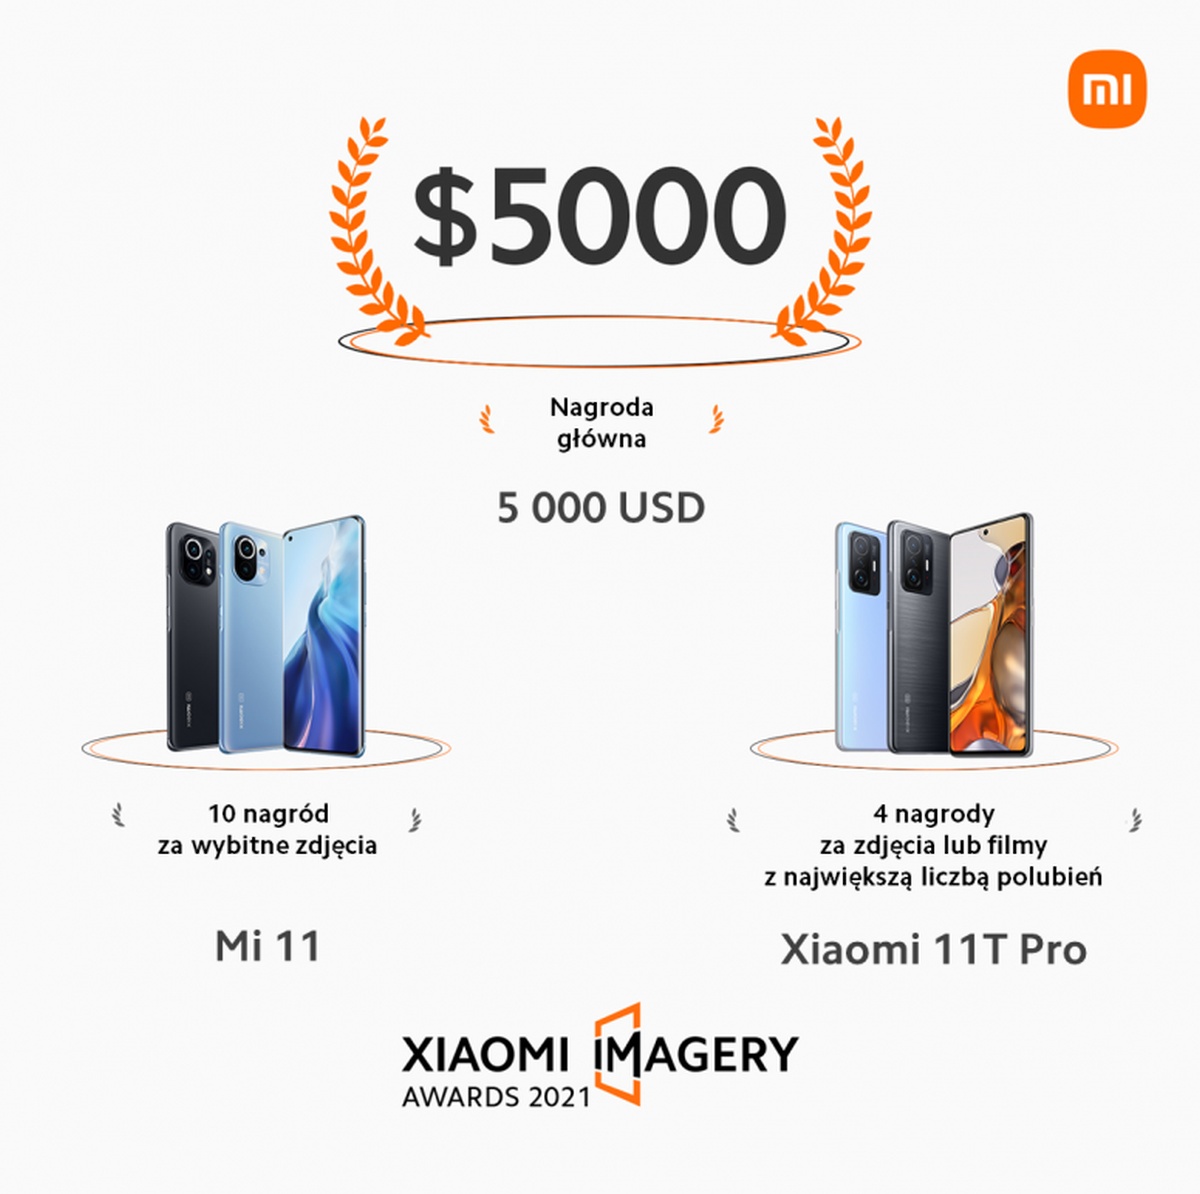 Xiaomi Imagery Awards 2021 nagrody